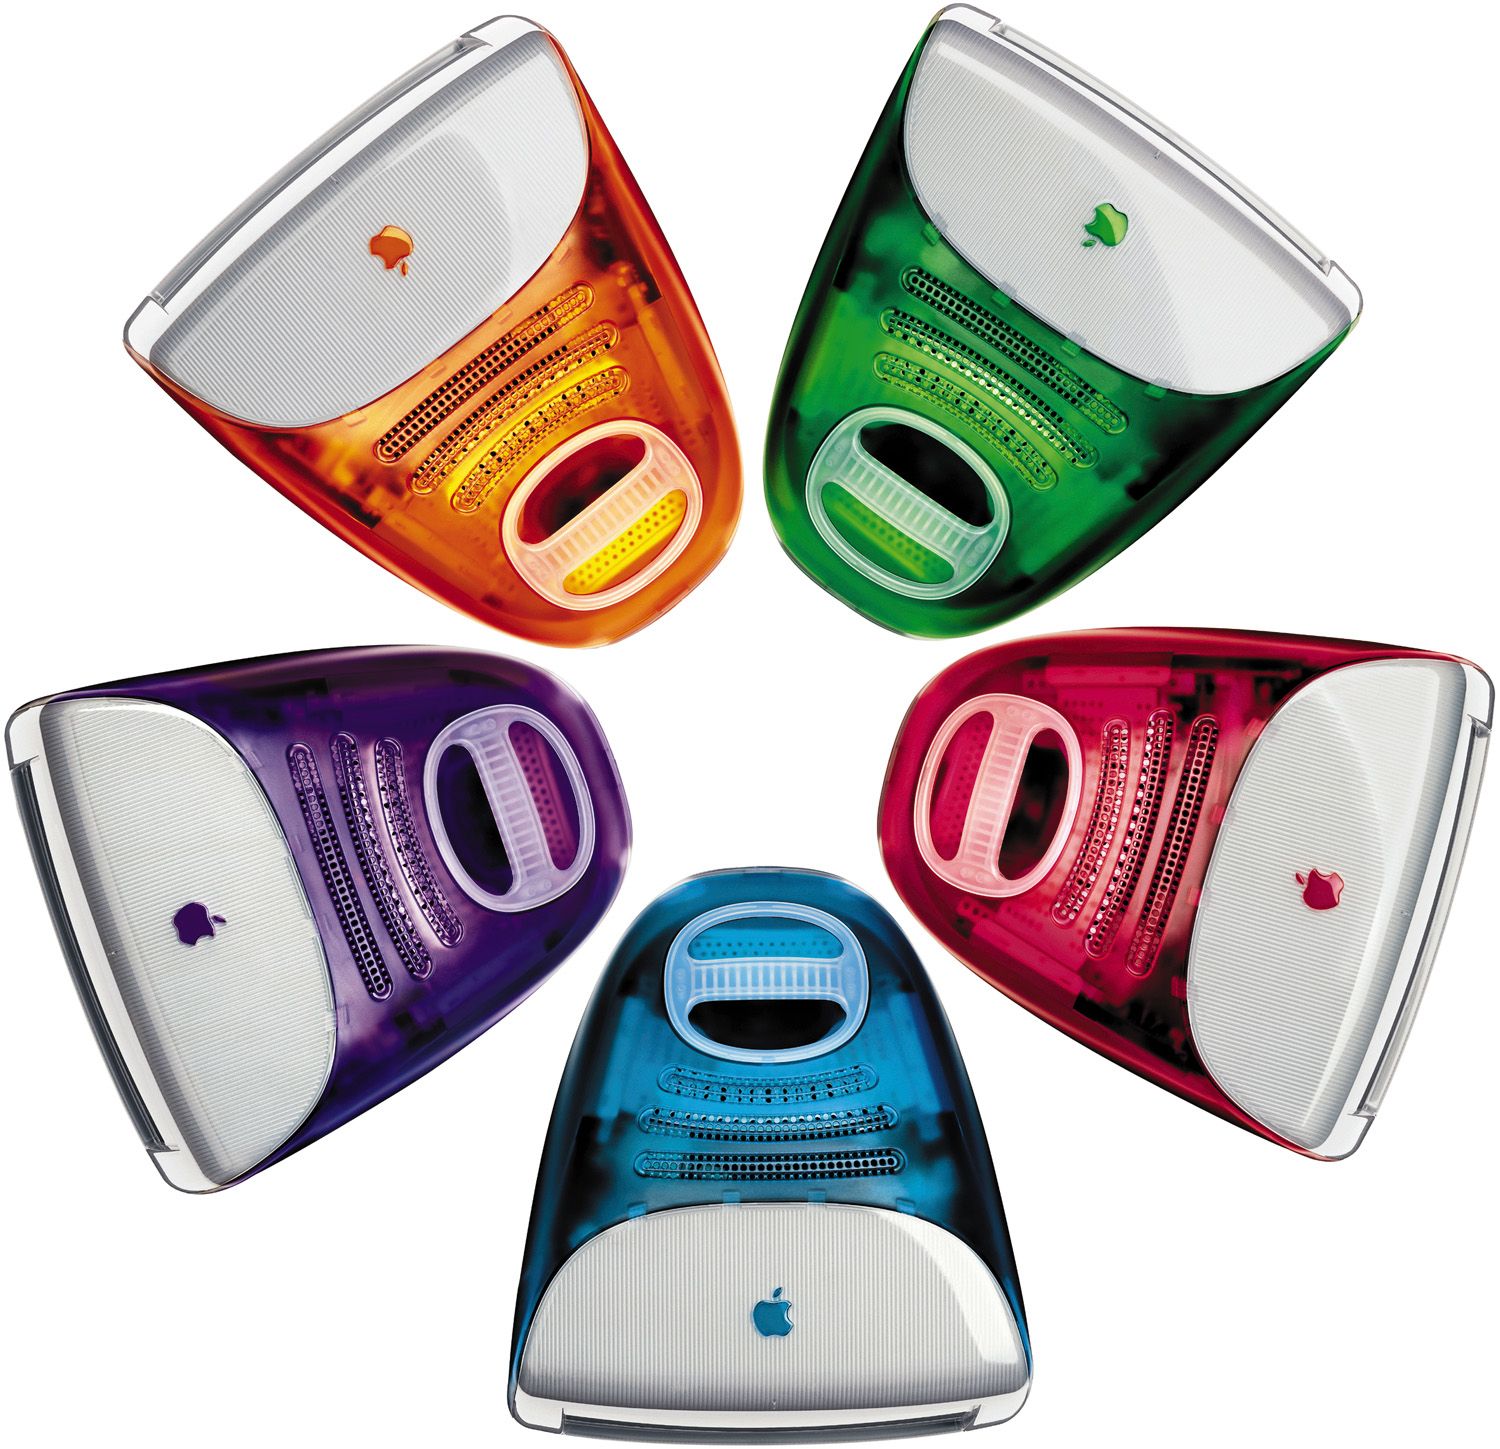 iMac G3.